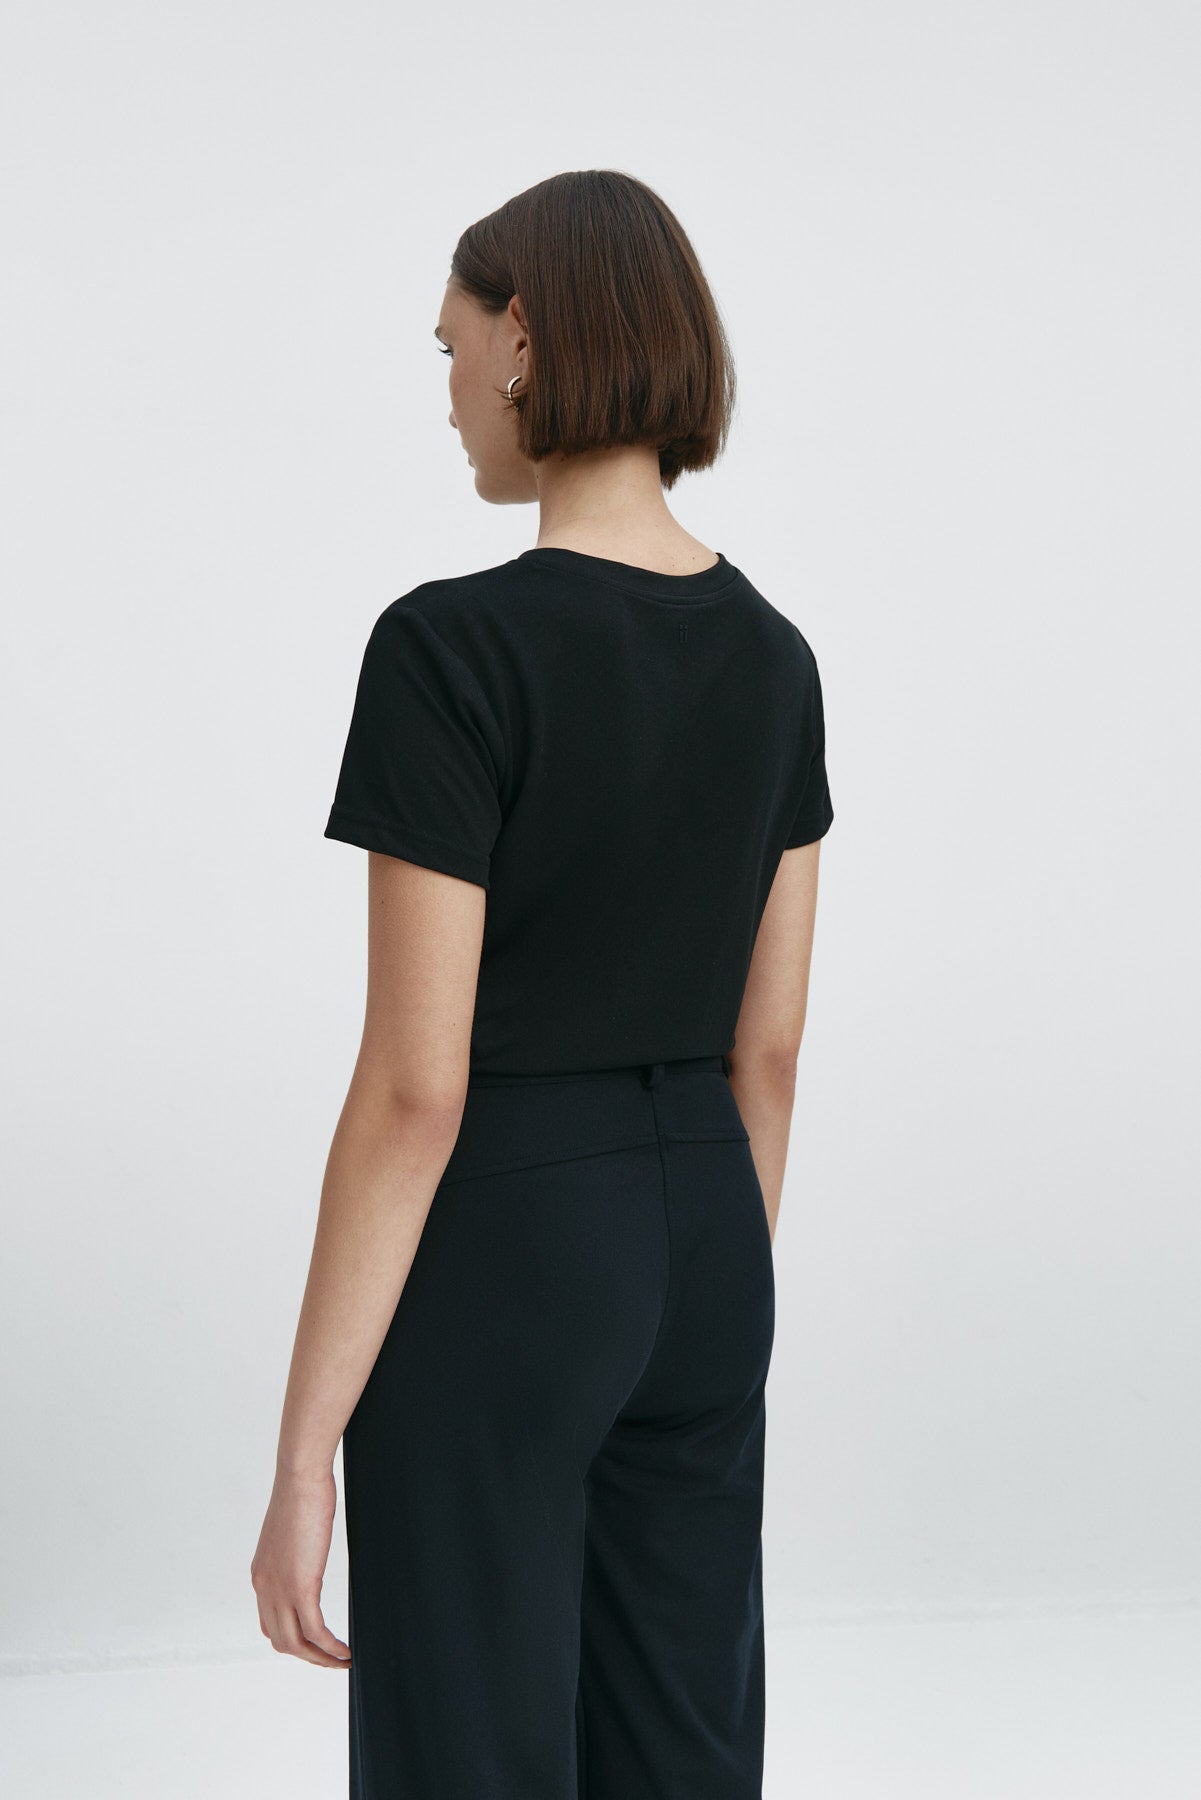 Camiseta básica para mujer en negro de Sepiia, fresca y resistente a manchas y arrugas. Foto espalda